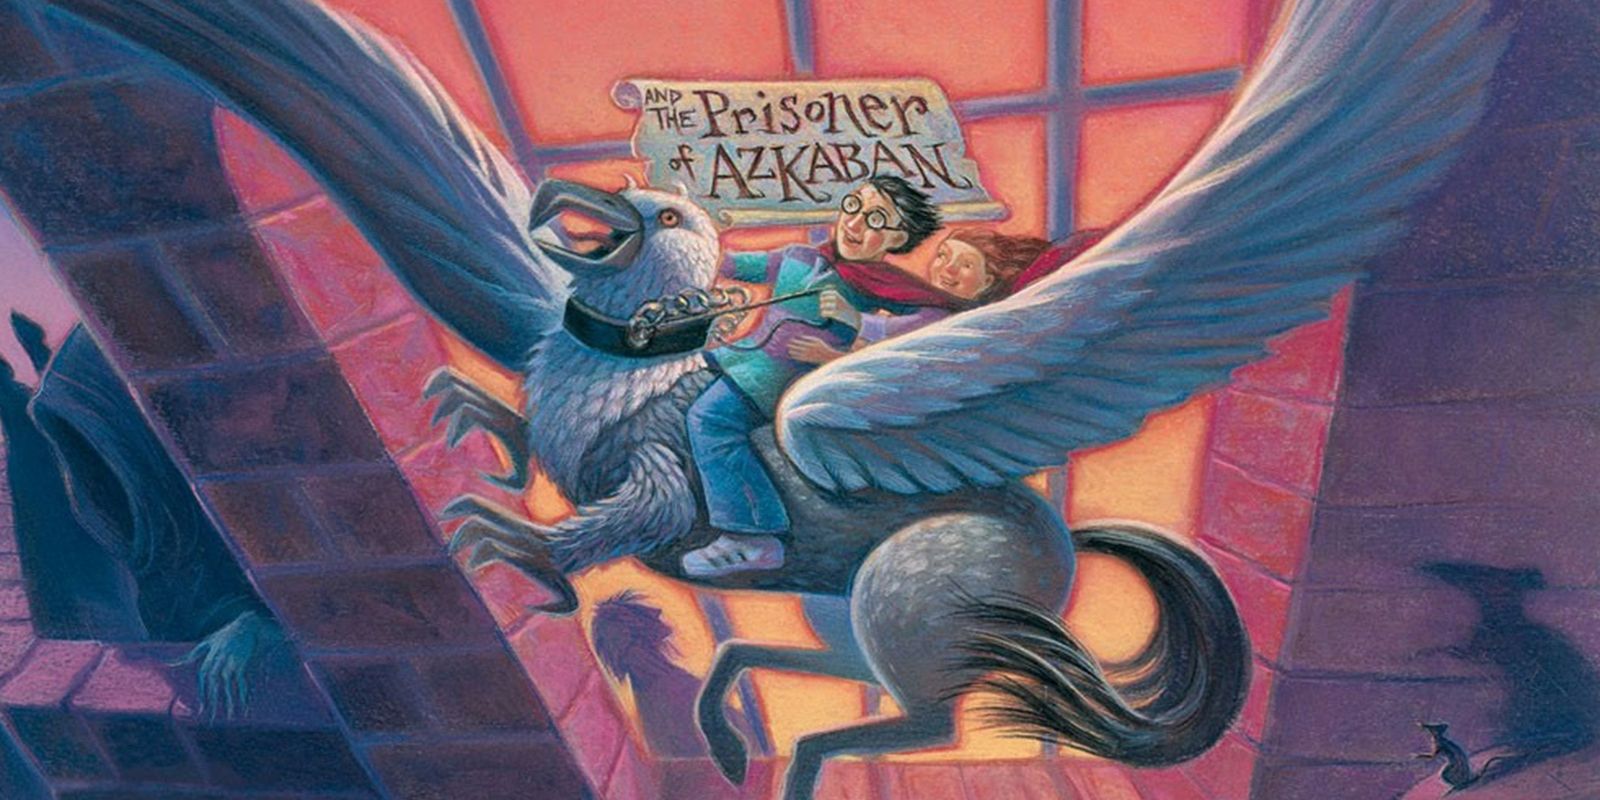 Prisoner of Azkaban Book Cover